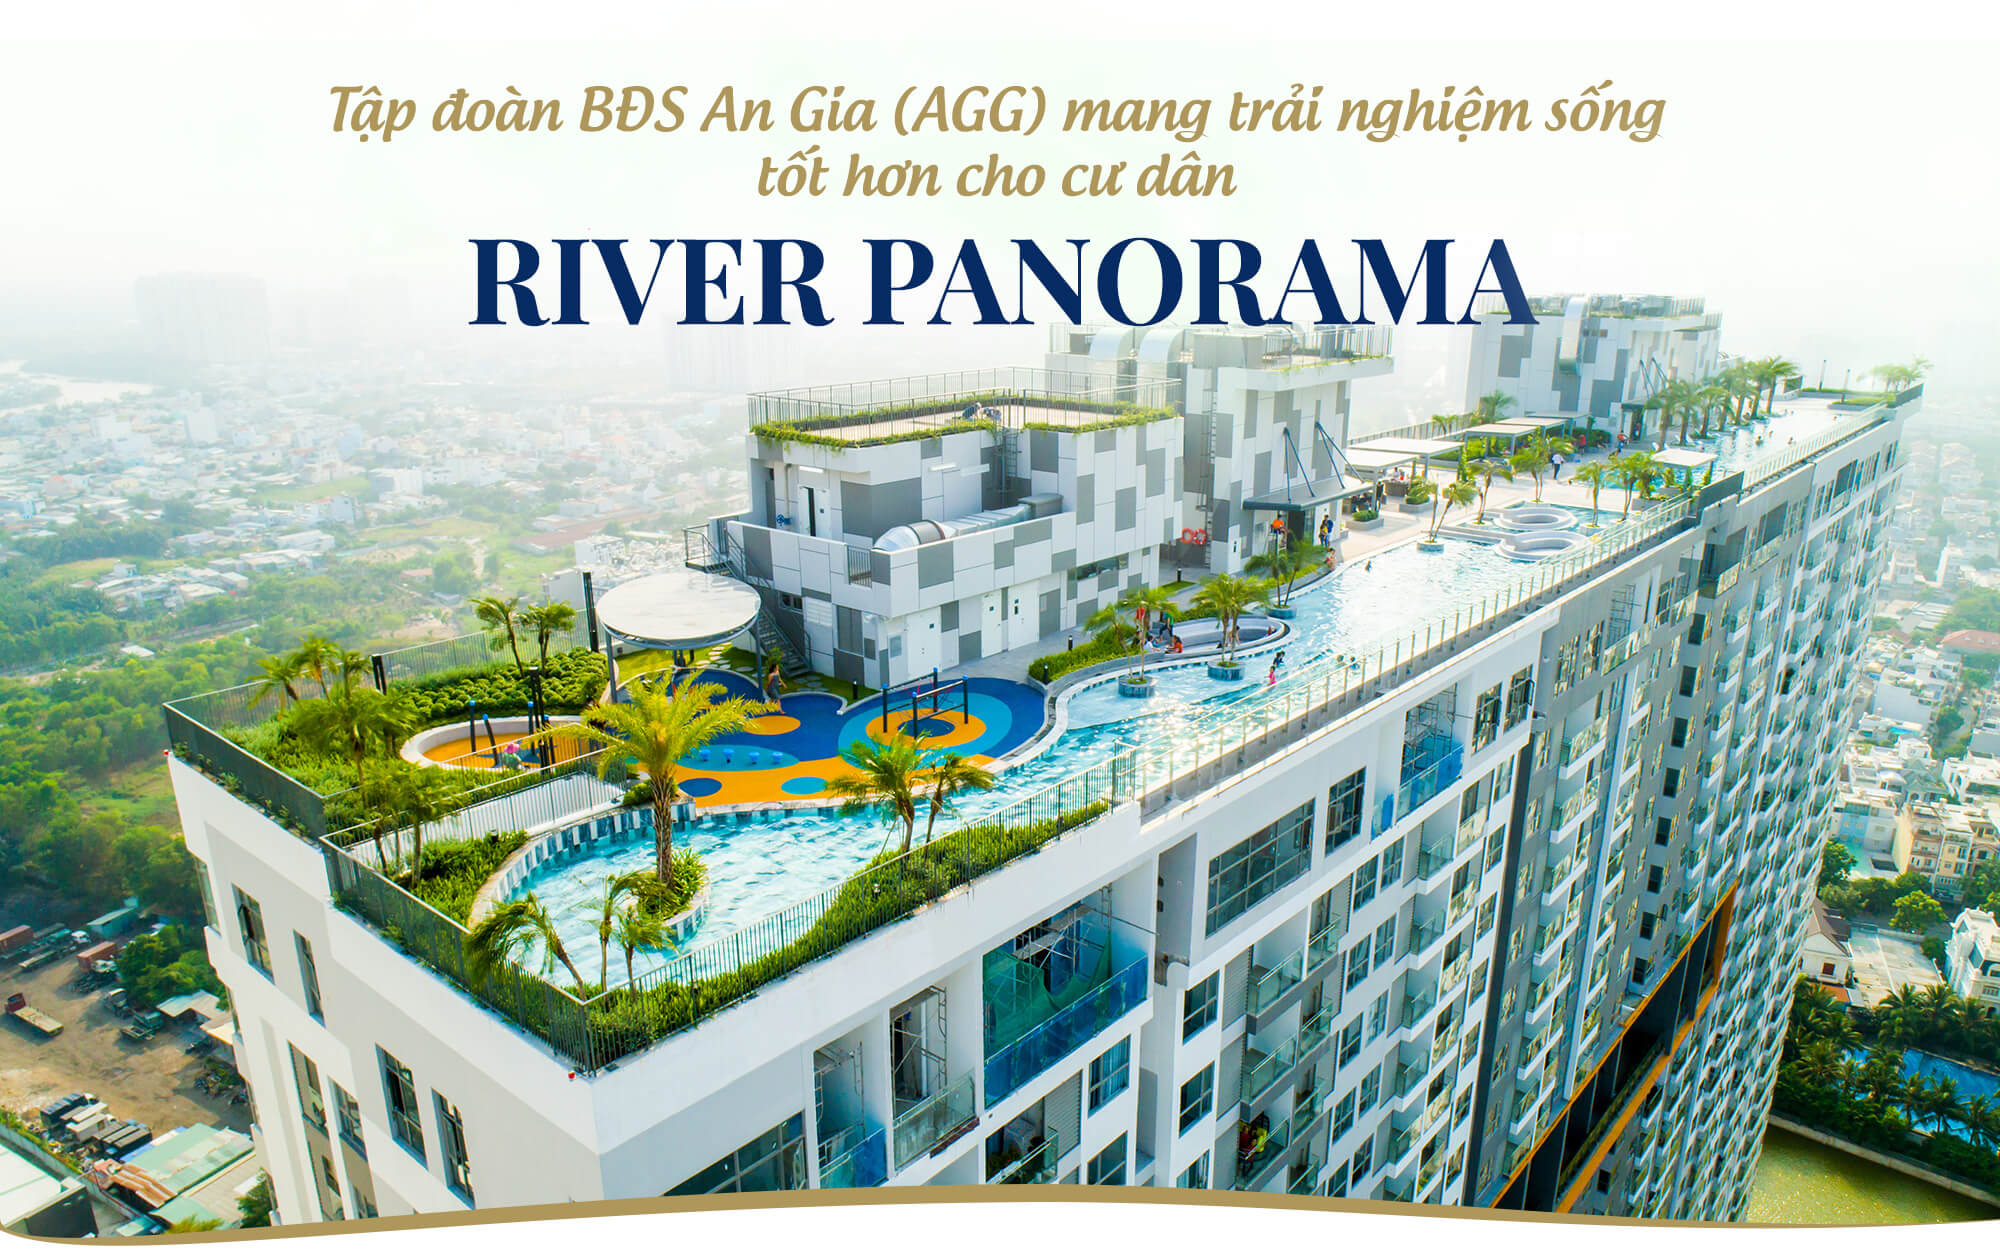 Dự án căn hộ chung cư River Panorama trên đường Đào Trí, Quận 7 của tập đoàn An Gia